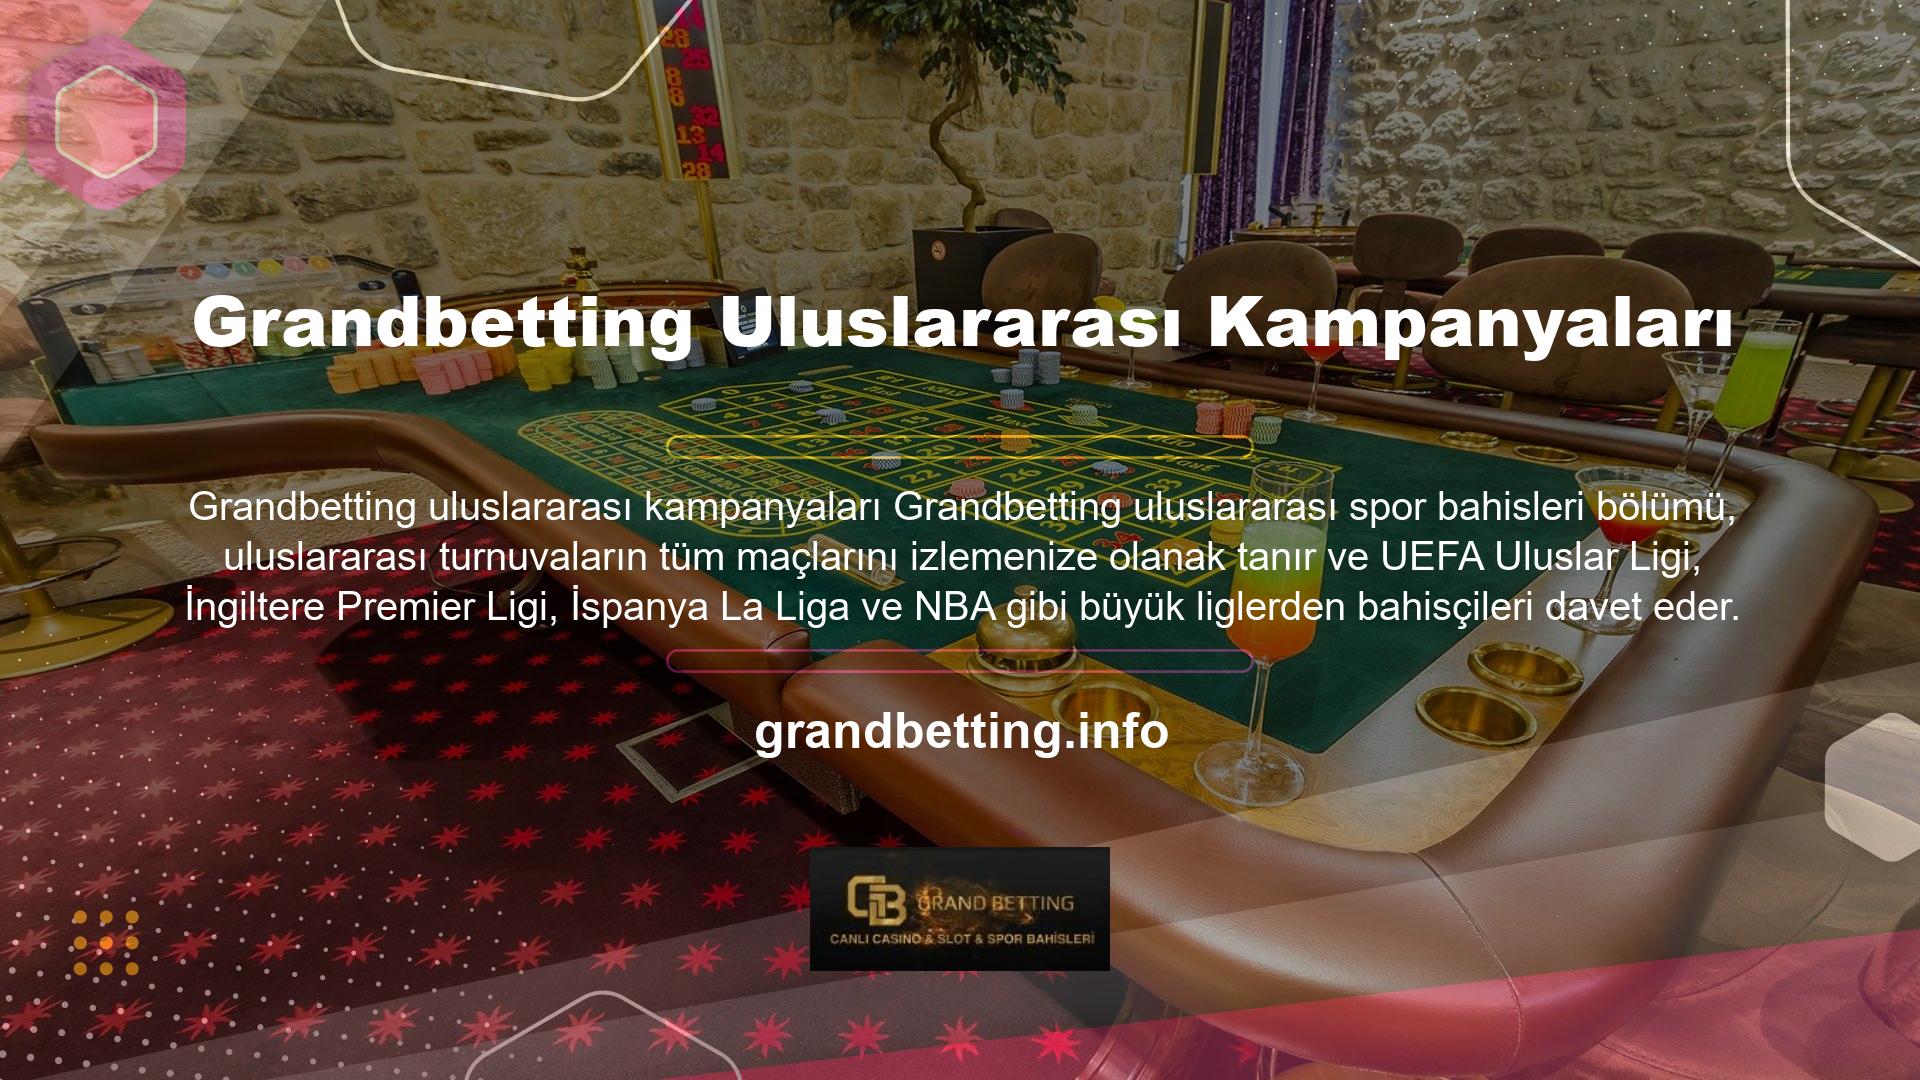 Casino Grandbetting Uluslararası Kampanyalar bölümünde blackjack, bakara, rulet ve daha fazlasını oynayabilirsiniz; Canlı Casino bölümü ise gerçek krupiyerlerle oynamanın heyecanını yaşamanızı sağlar